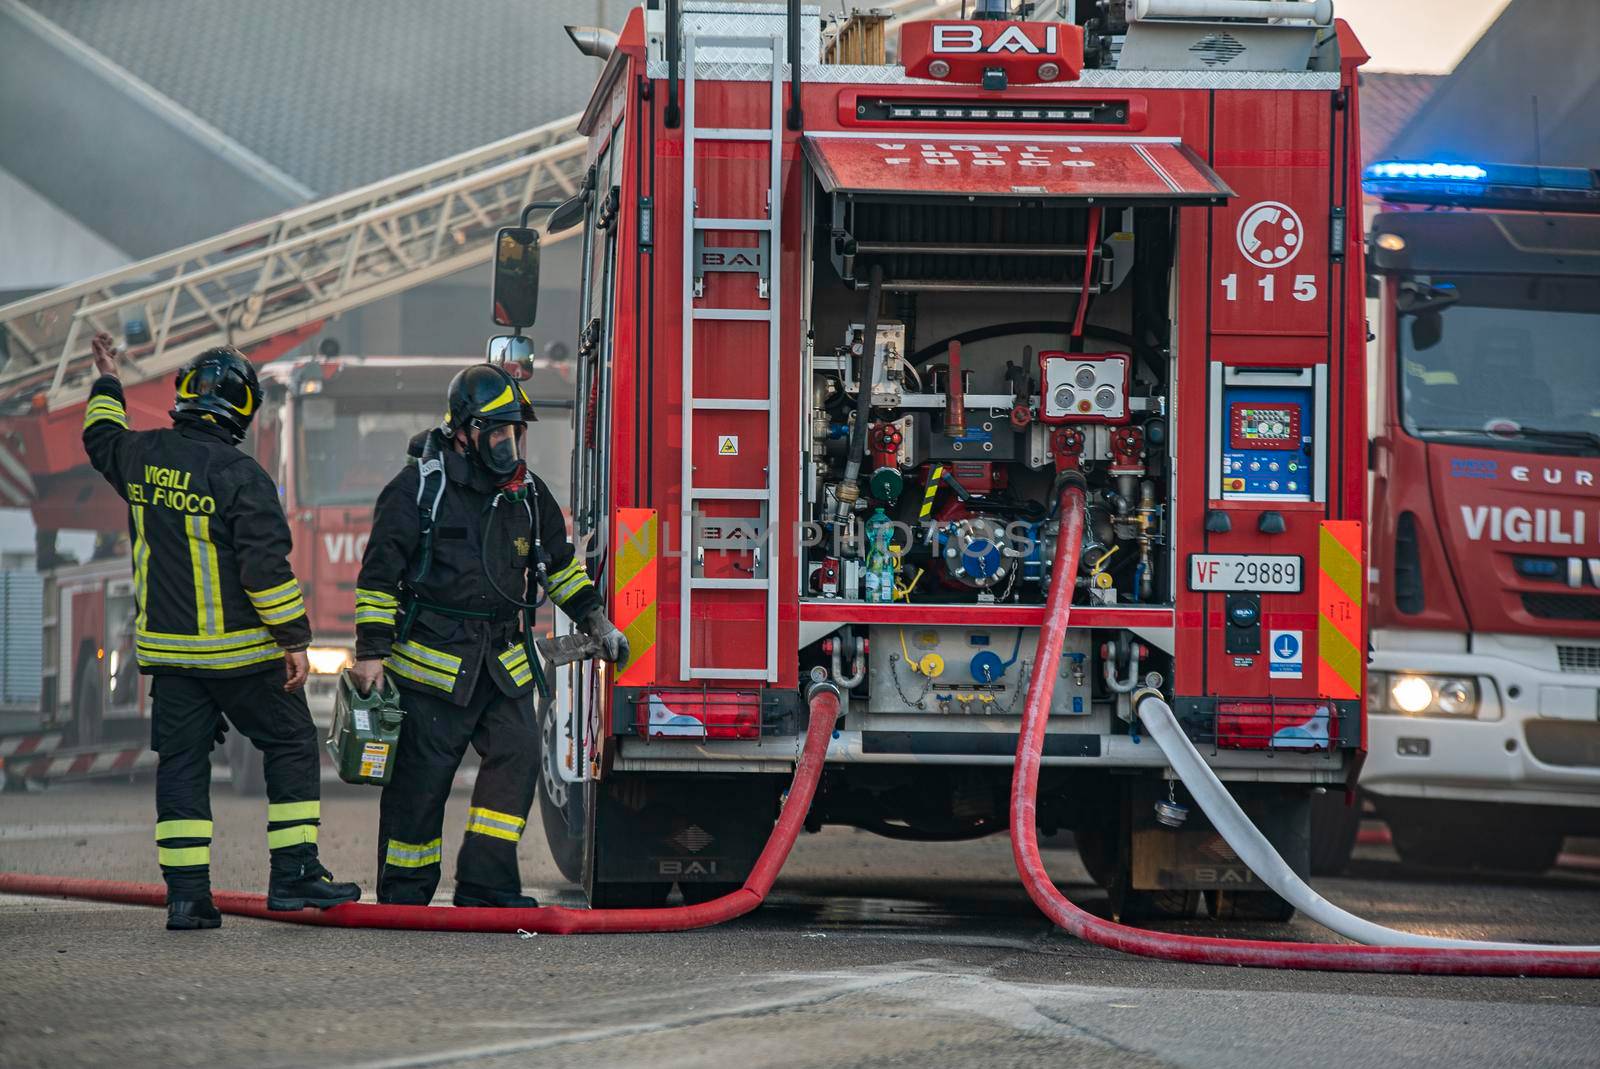 VILLANOVA DEL GHEBBO, ITALY 23 MARCH 2021: Firefighter emergency detail